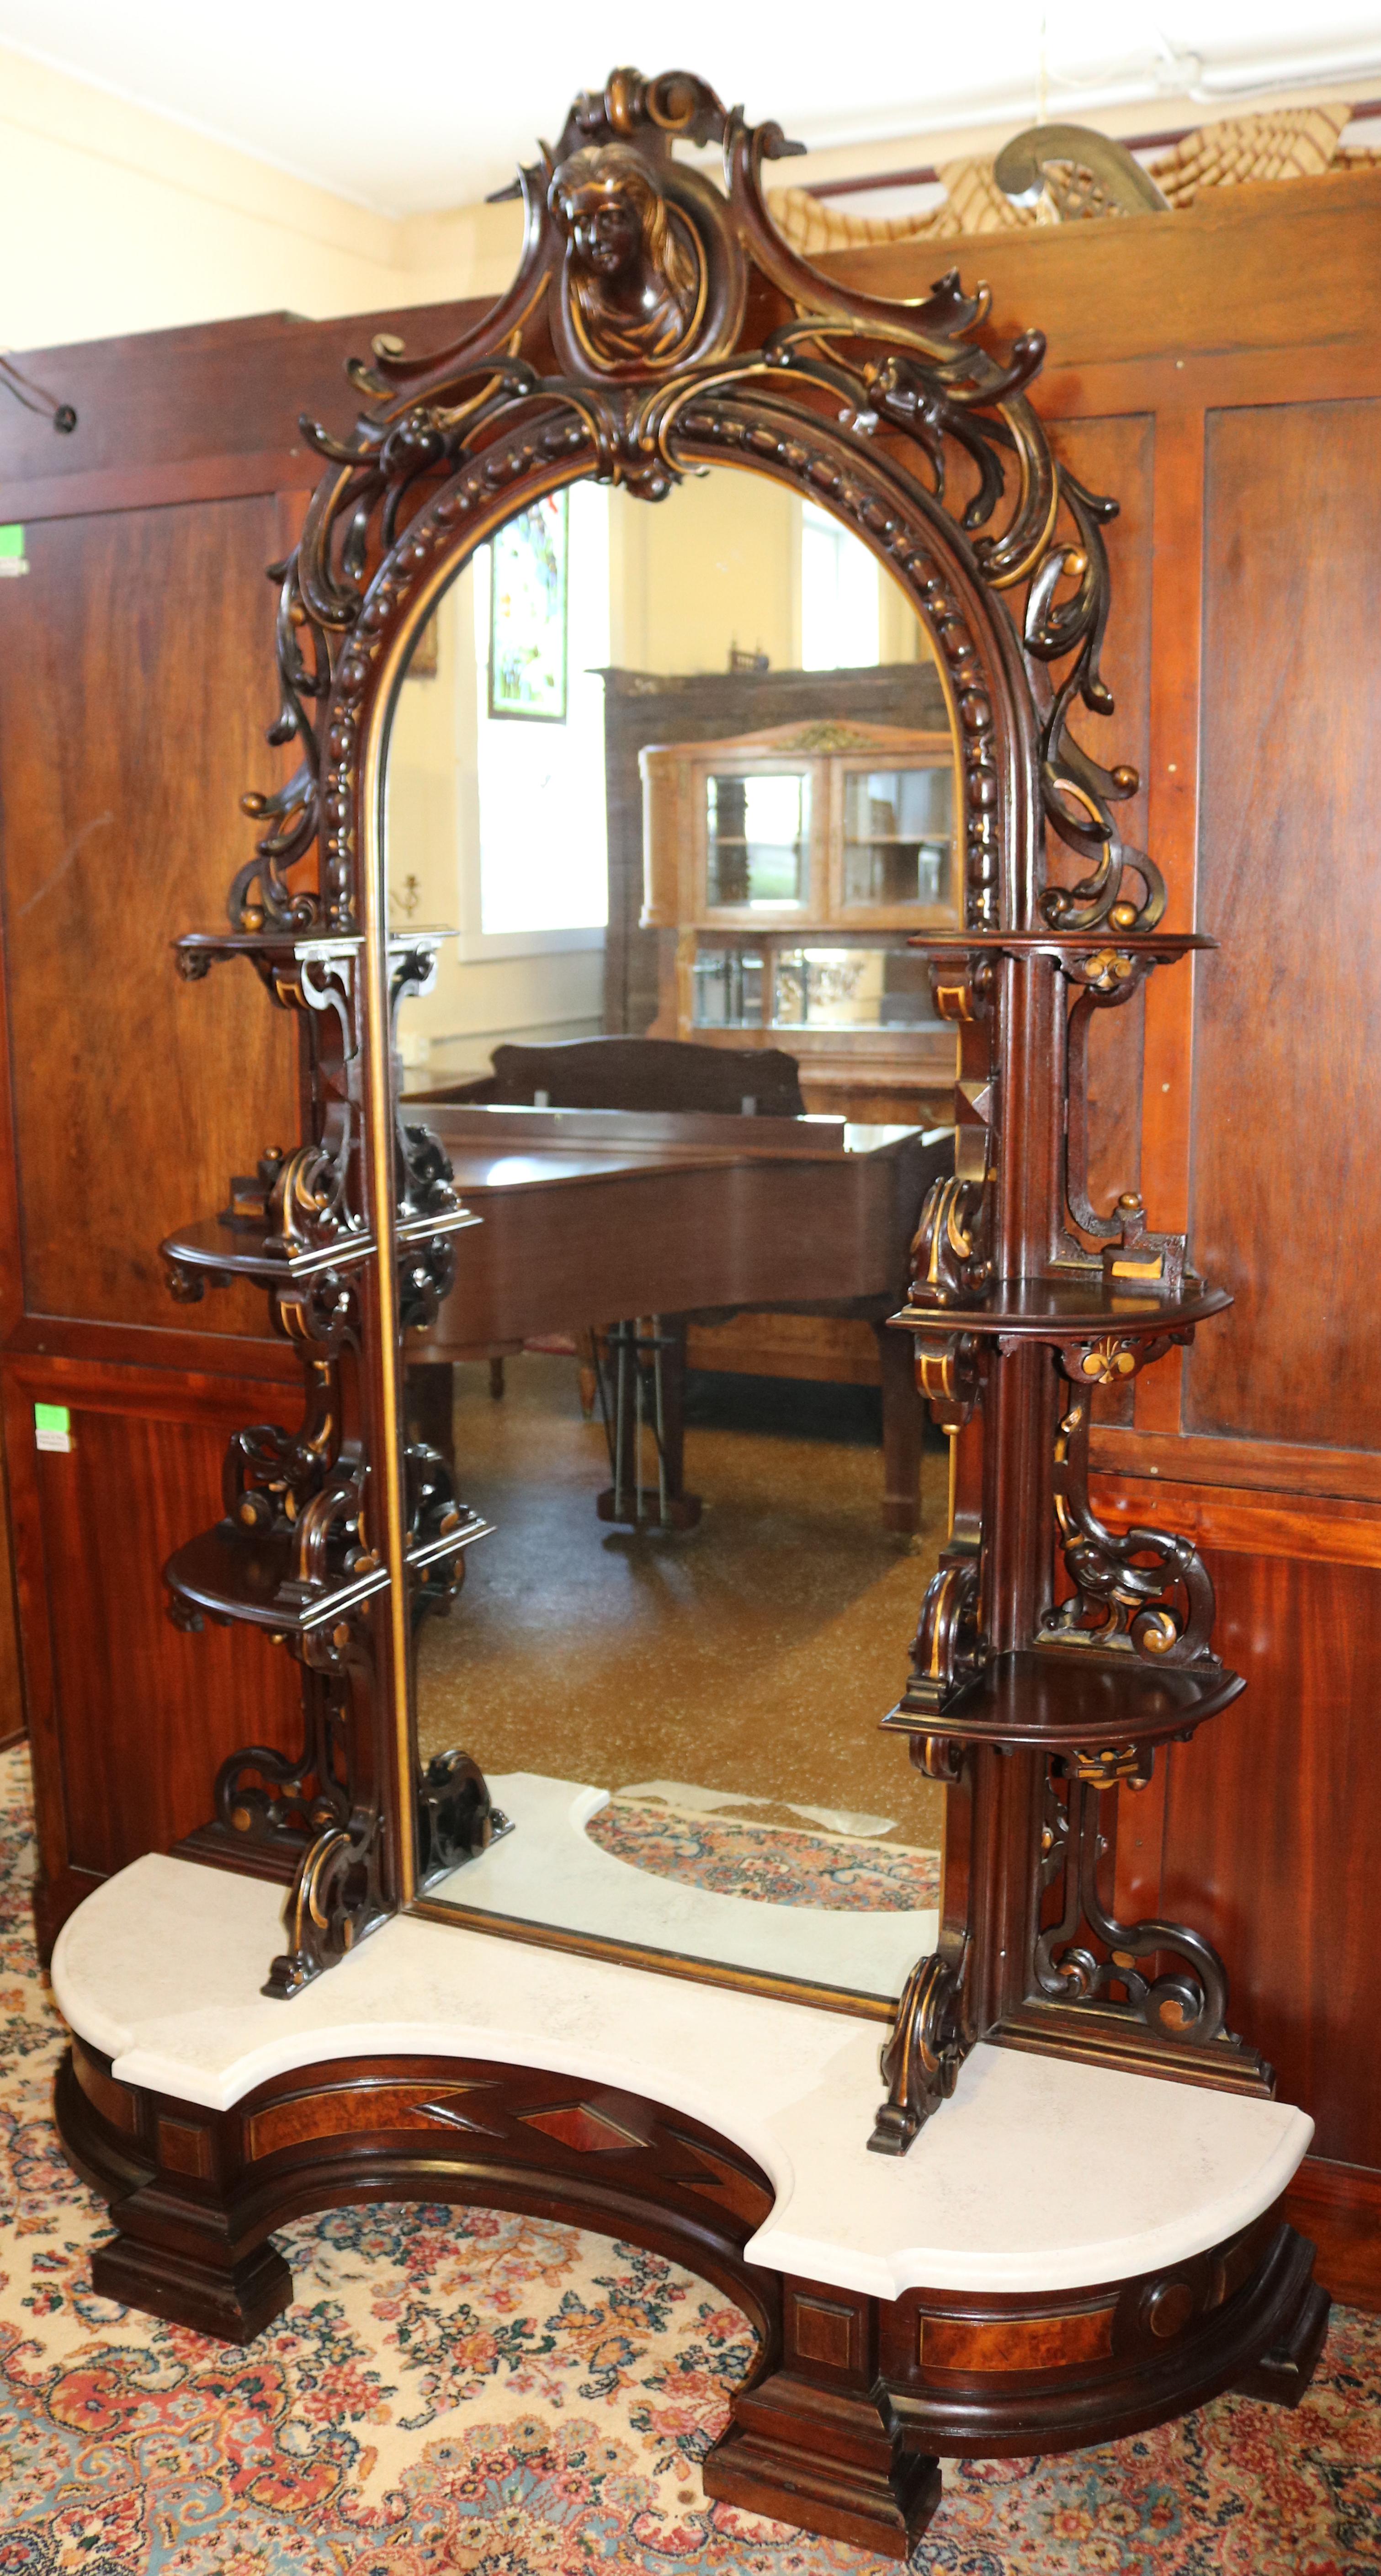 Miroir d'étagère en palissandre sculpté du 19e siècle Attr. à Mitchell & Rammelsberg

Dimensions : 96